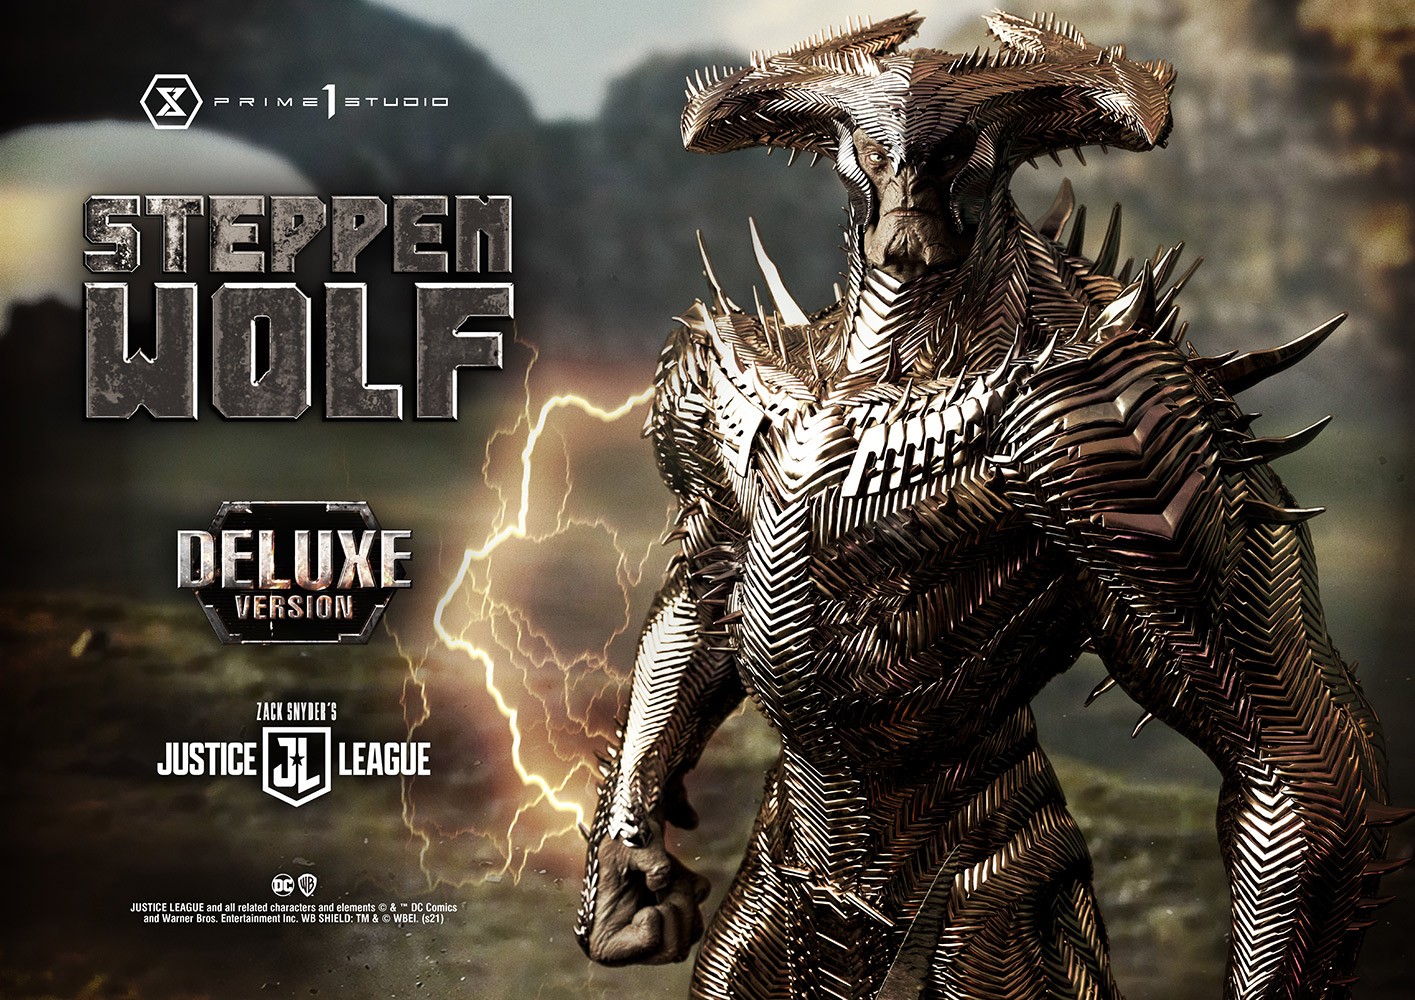 Steppenwolf (Deluxe Version)- Prototype Shown